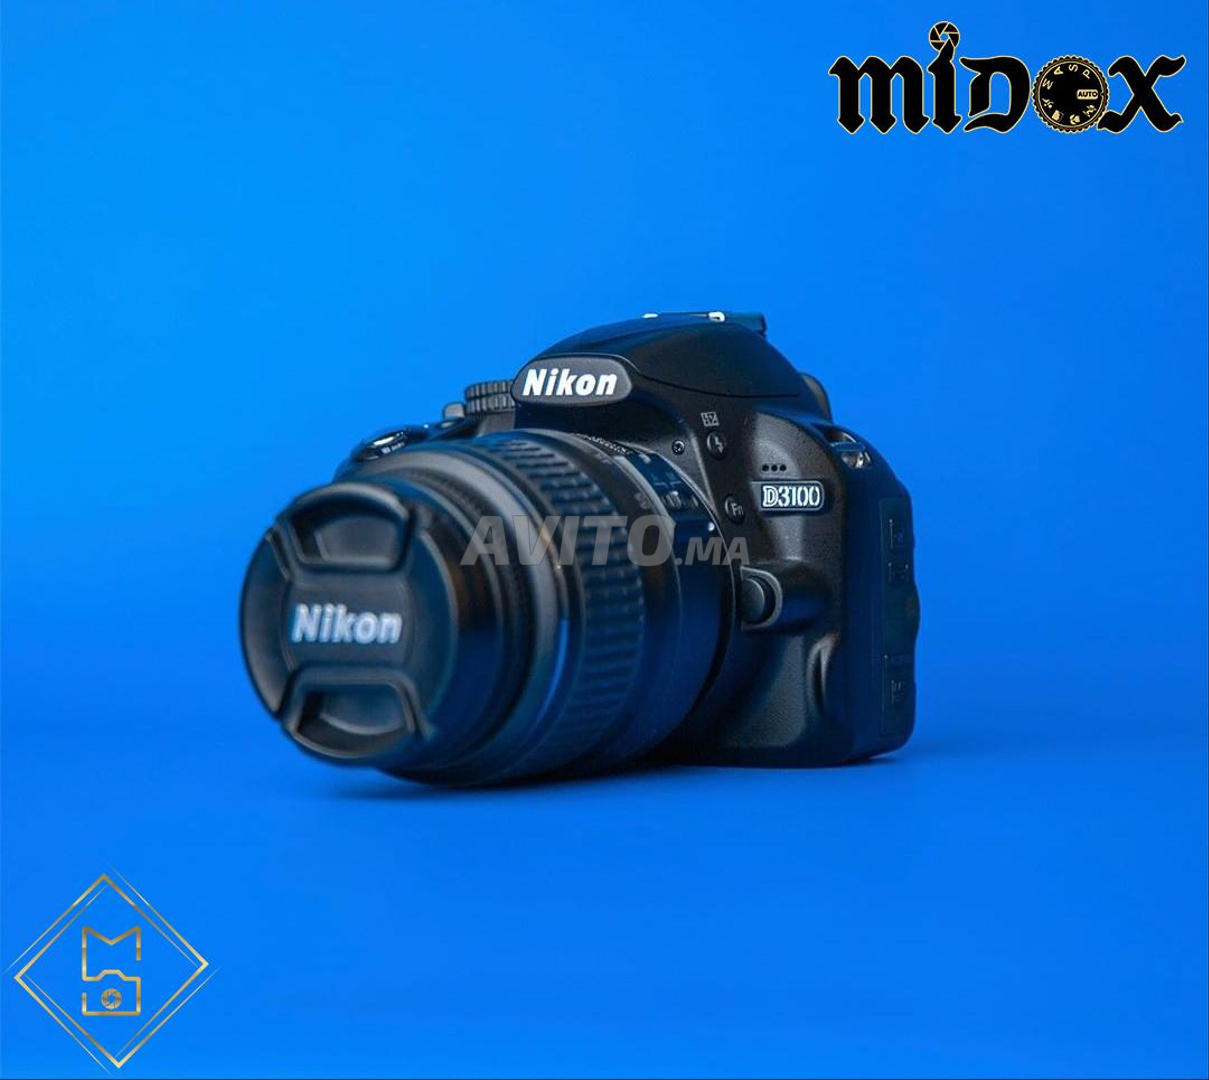 Magasin Midox SHOP Maarif Canon Nikon Sony Garanti - 6